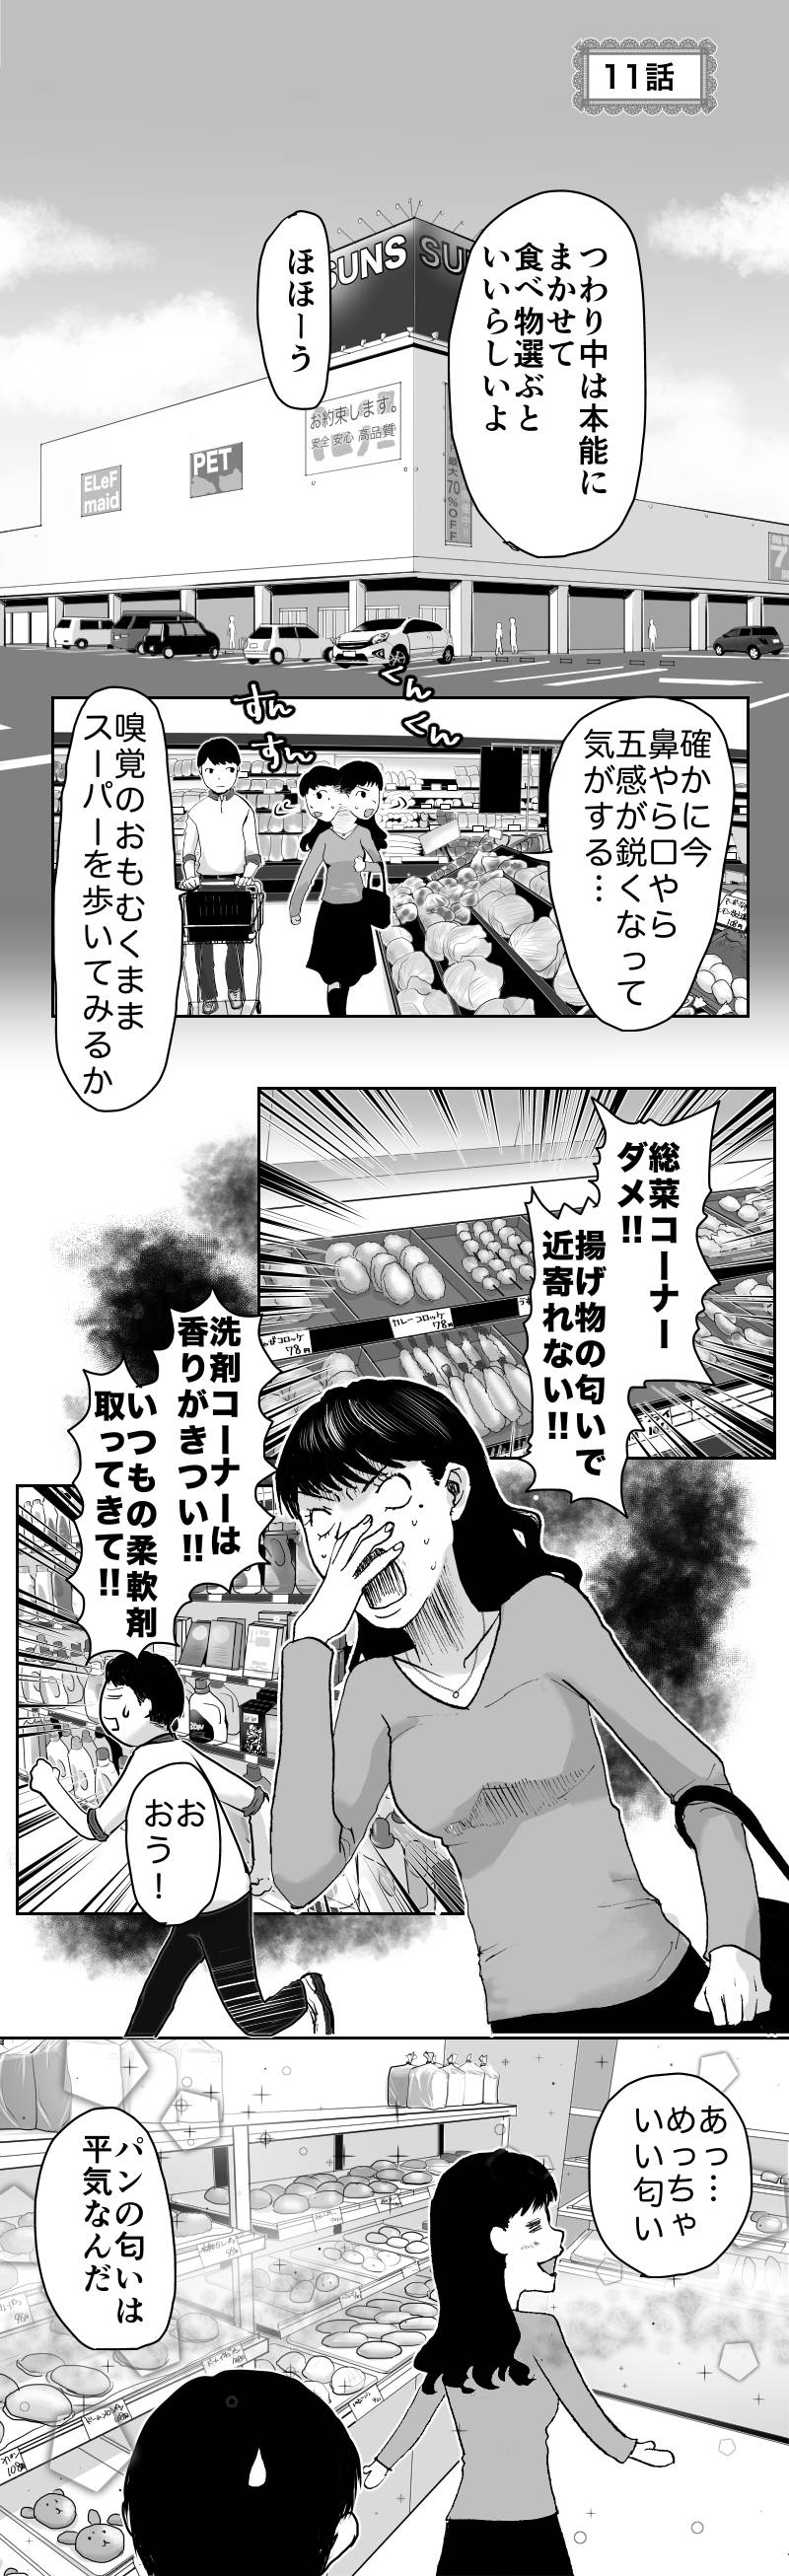 久永家〜妊娠出産がわかるエッセイ漫画〜 第11話